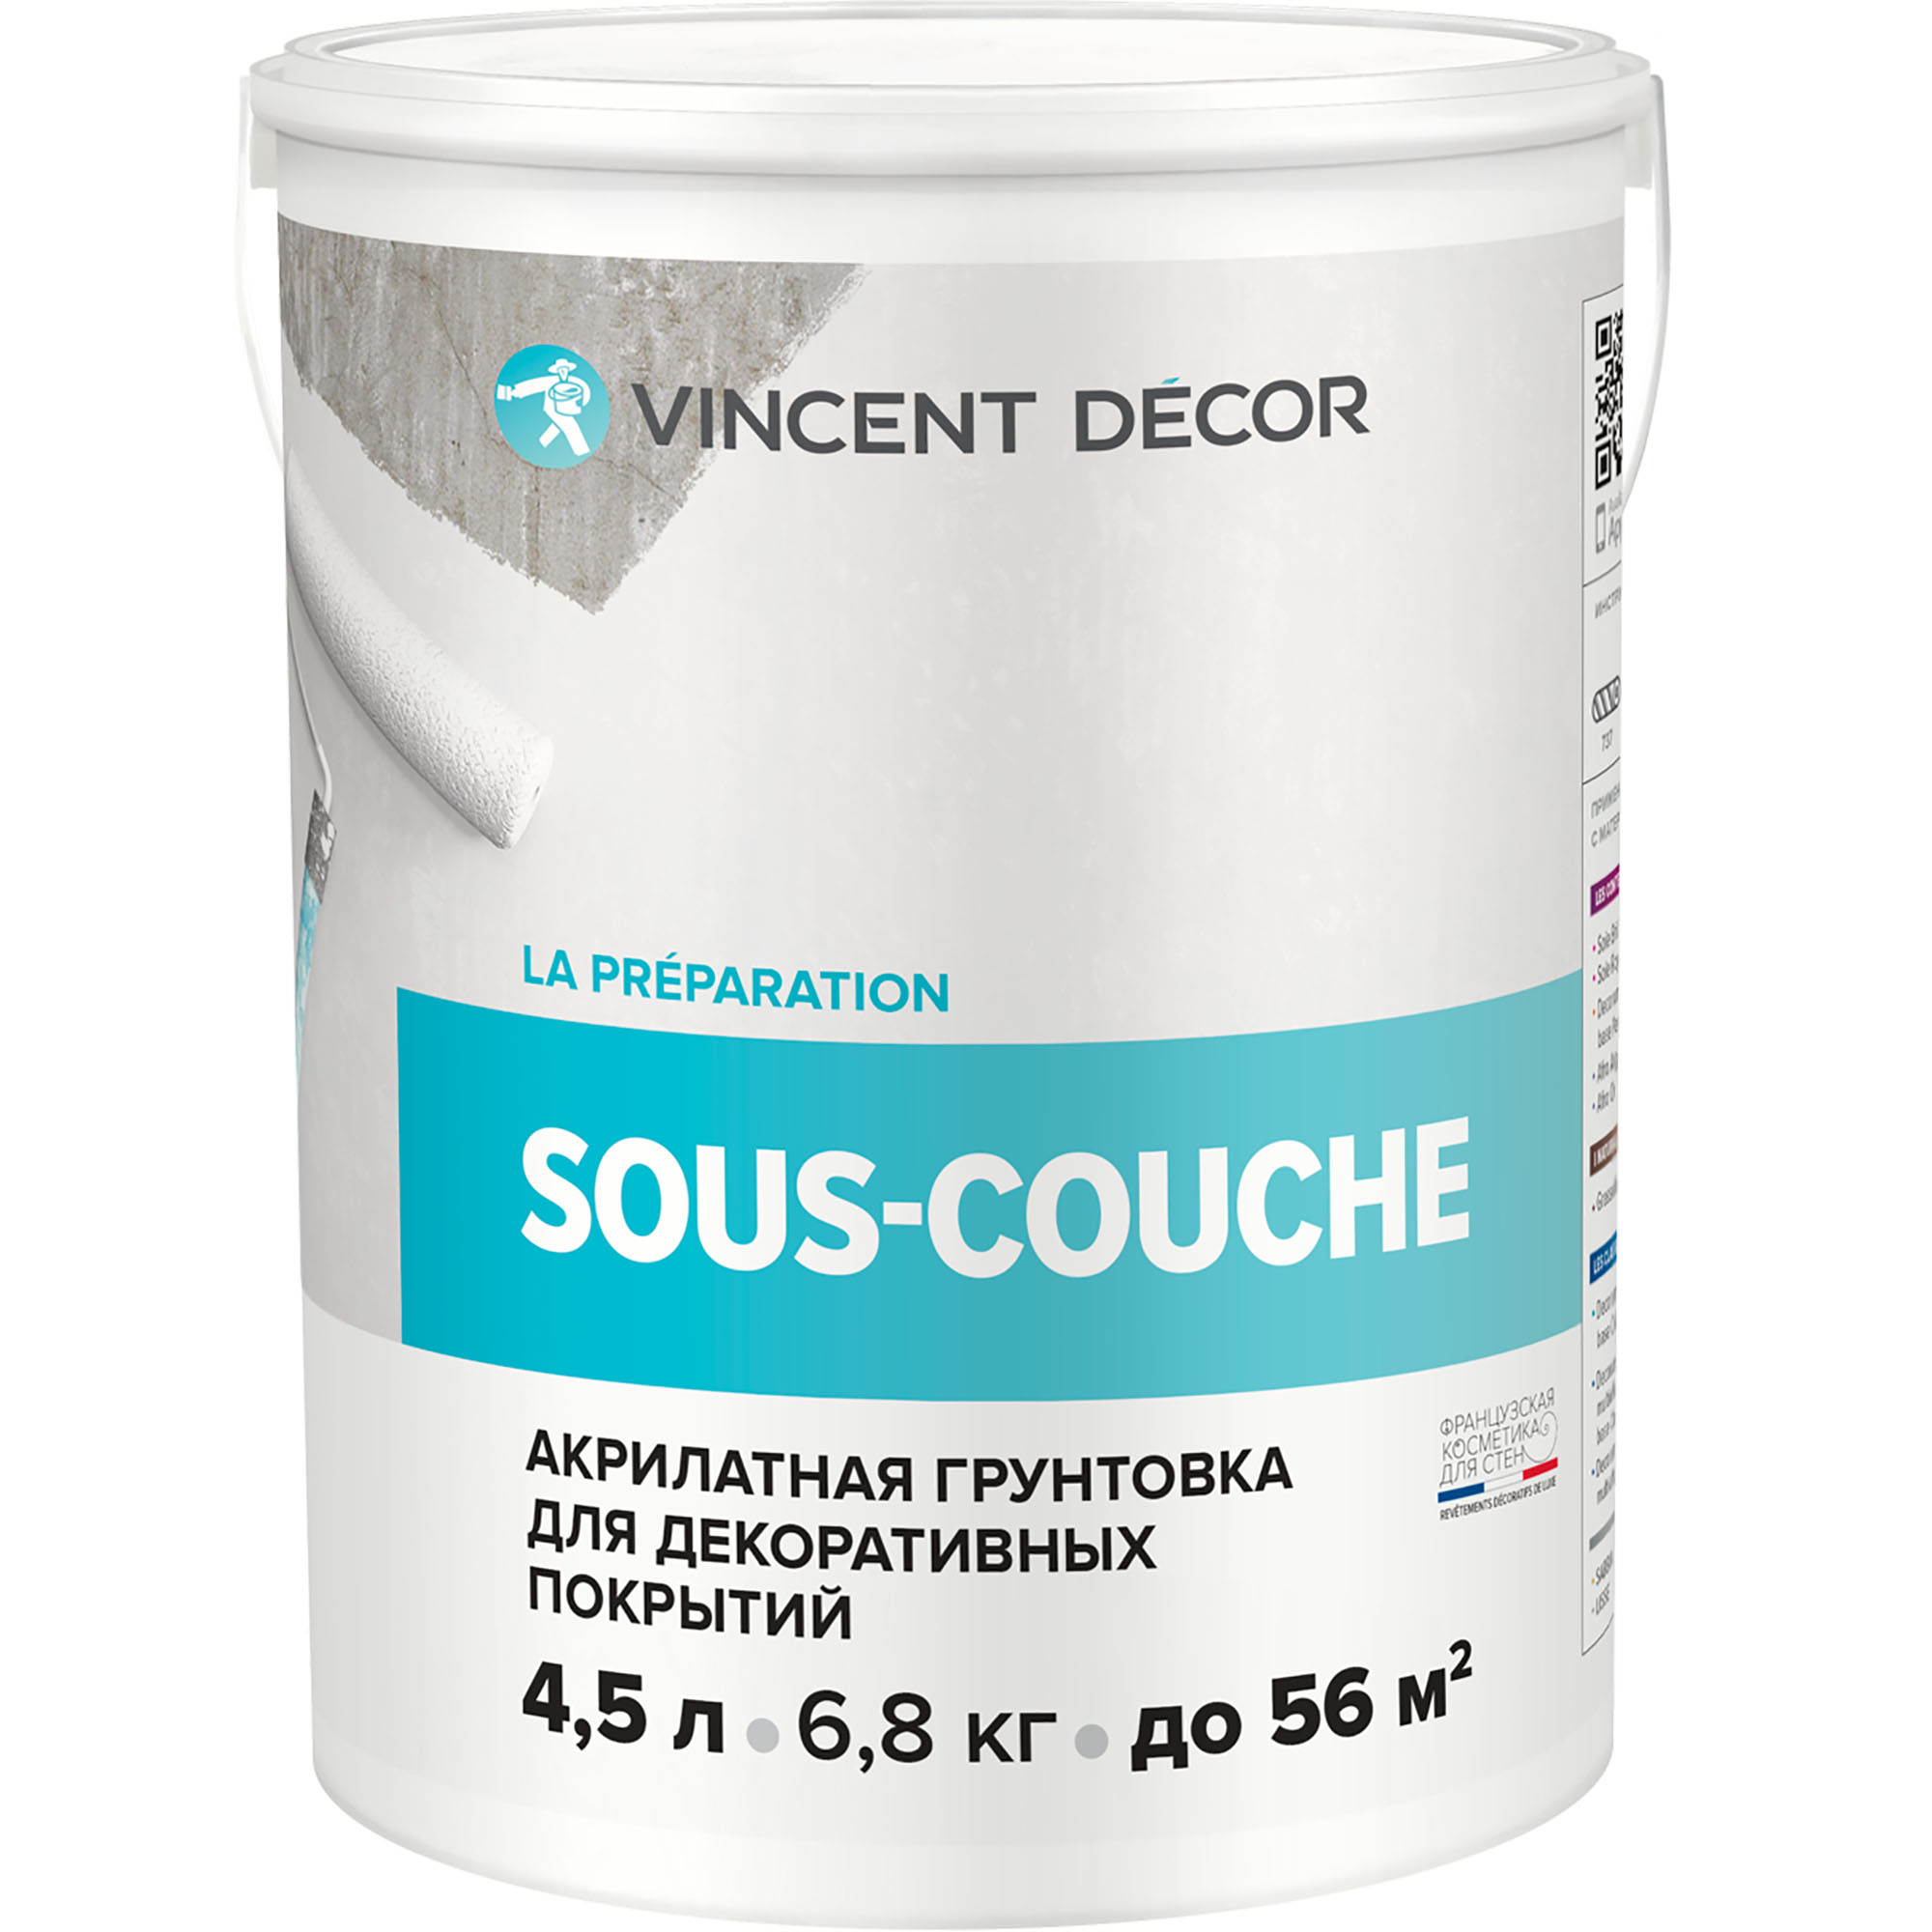 Грунтовка для декоративных покрытий Vincent Decor Sous-couche 4,5 л грунтовка для декоративных покрытий vincent decor sous couсhe 2 5 л